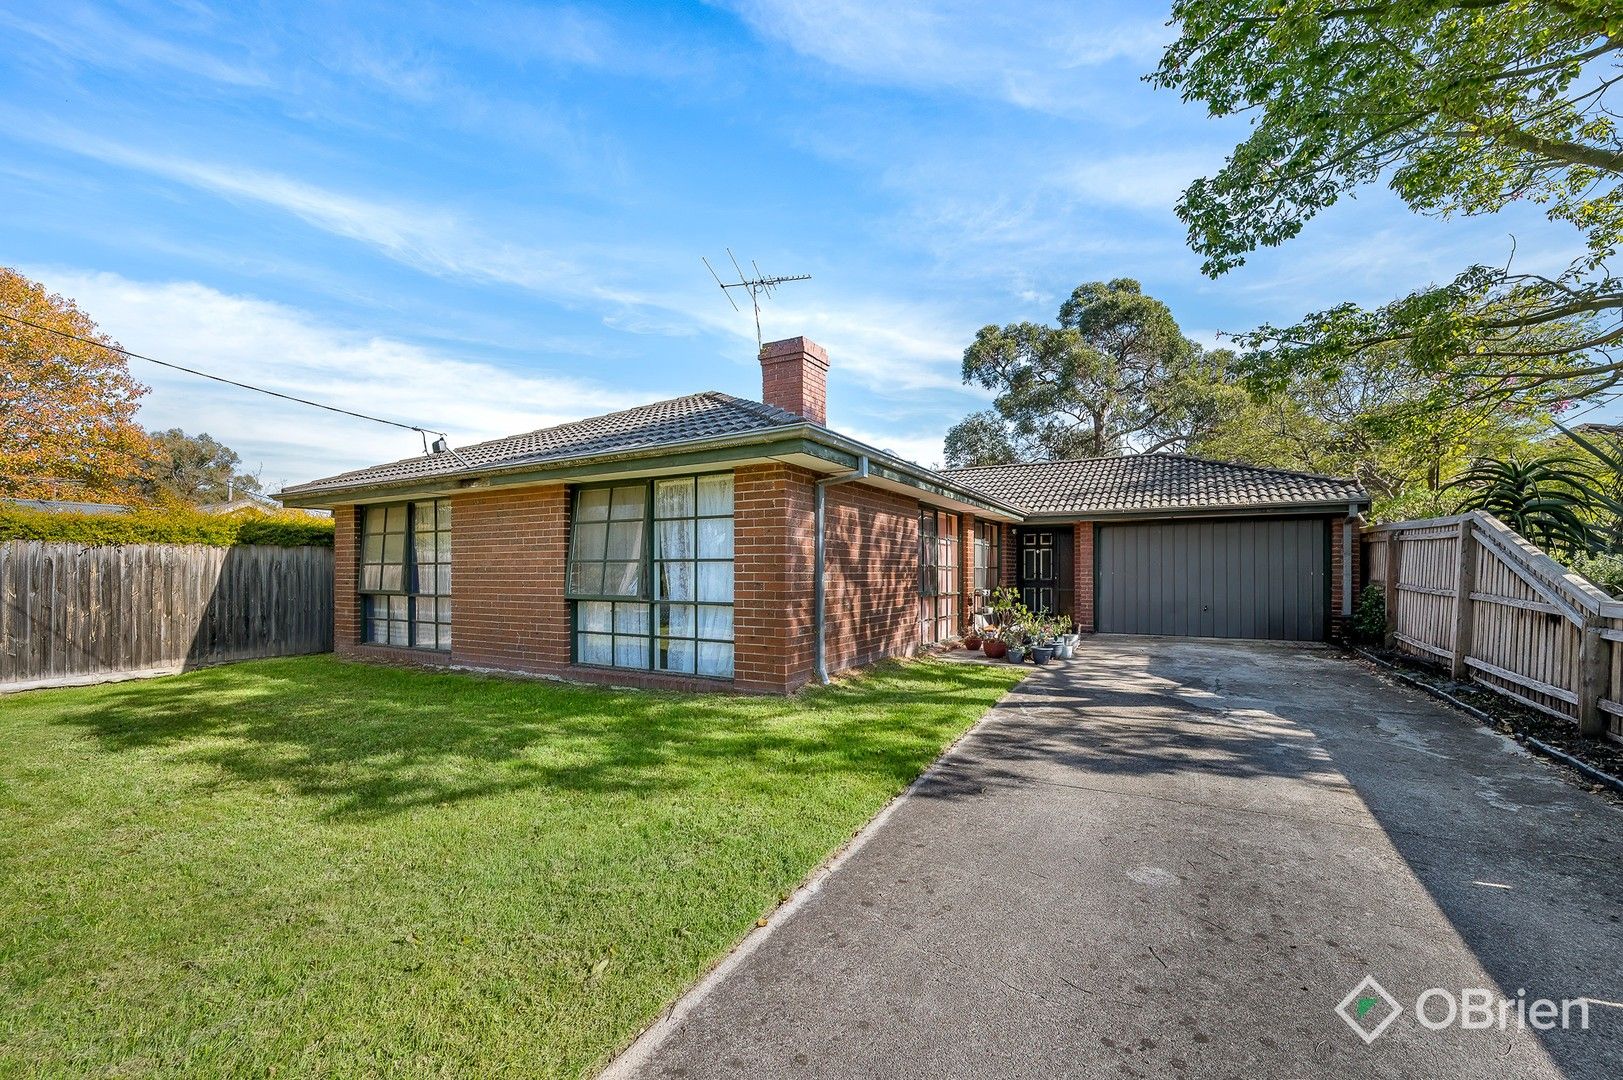 3 bedrooms House in 2494 Frankston-Flinders Road BITTERN VIC, 3918